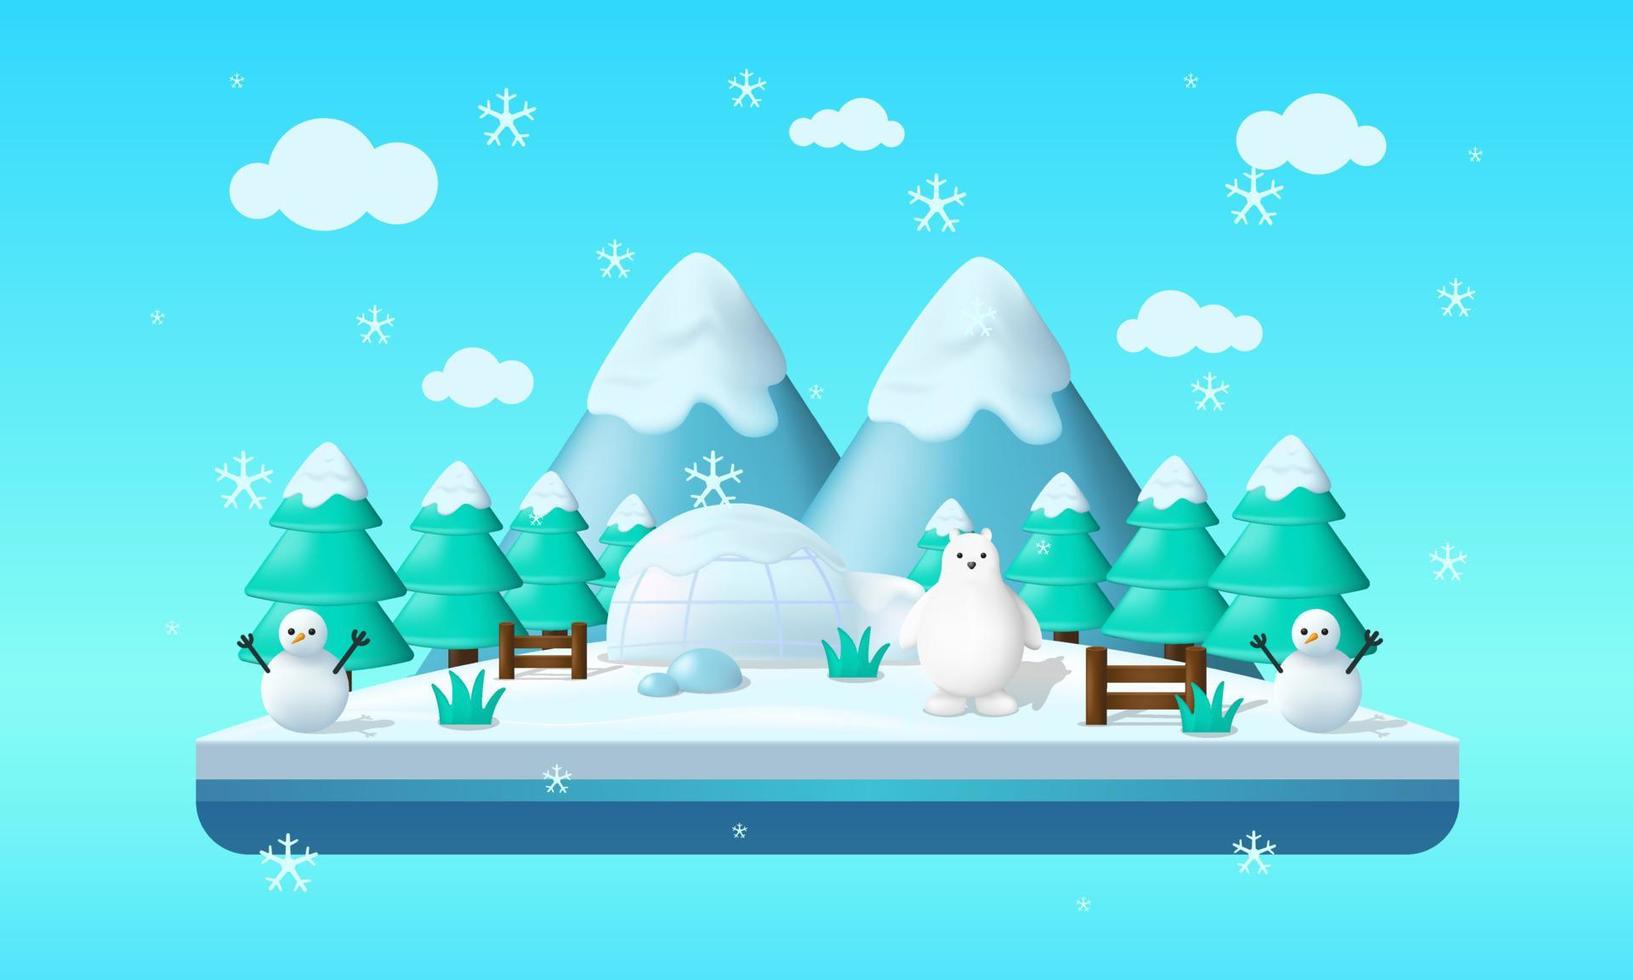 drijvend wintereiland in vlakke afbeelding met ijsbeer, sneeuwman en ijspanorama. ijs eiland illustratie. winter vector achtergrond geschikt voor dekking, illustratie, spandoek, poster ect.